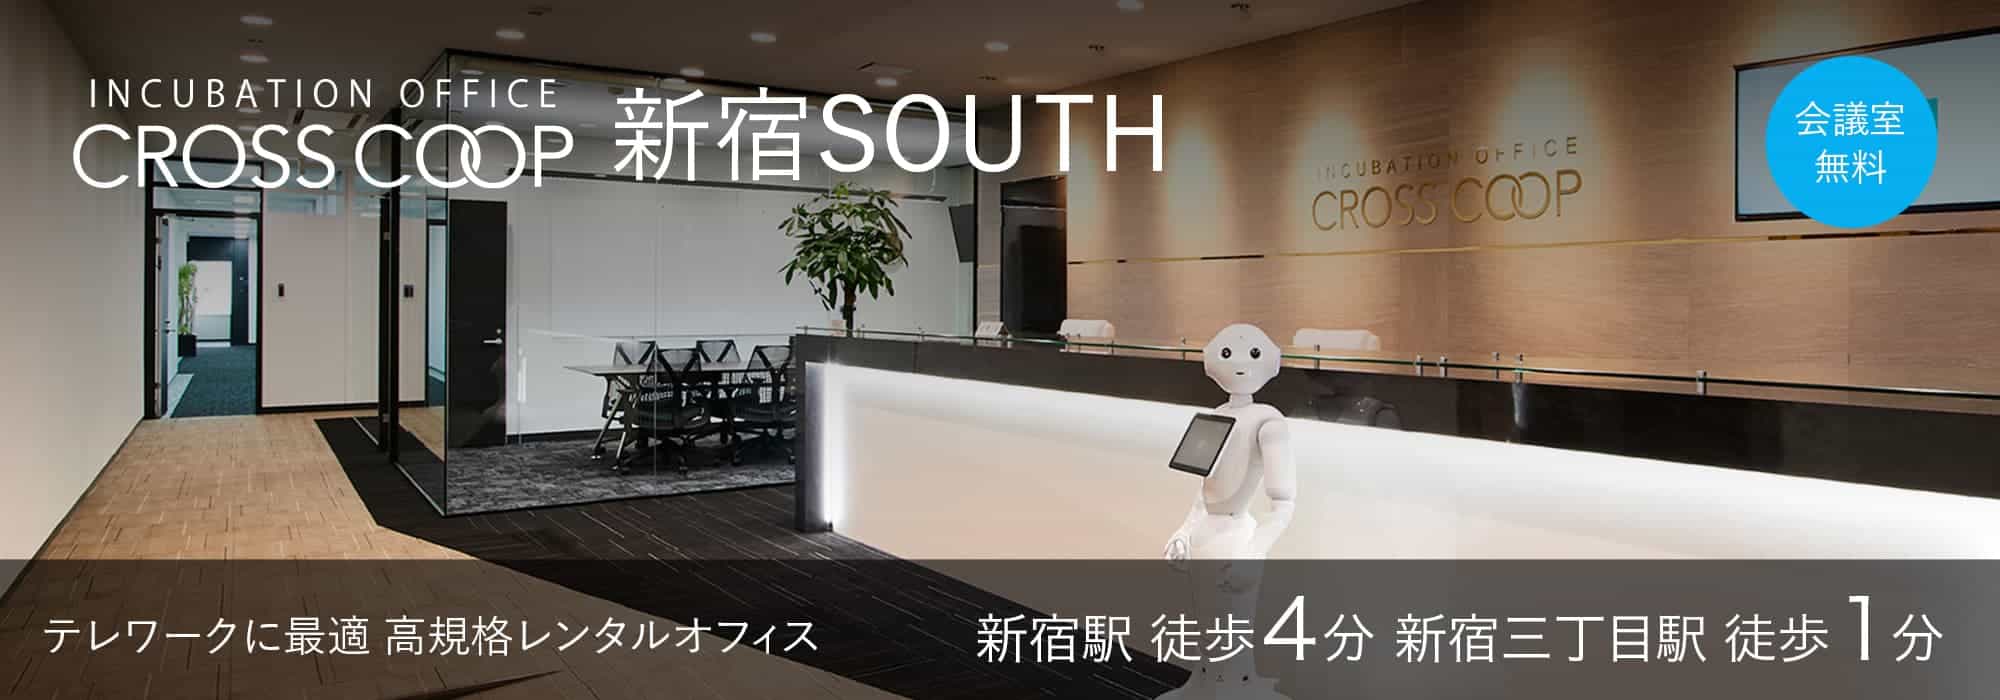 新宿の高規格レンタルオフィス【CROSSCOOP新宿SOUTH】新宿駅から徒歩4分、サテライトオフィスに最適